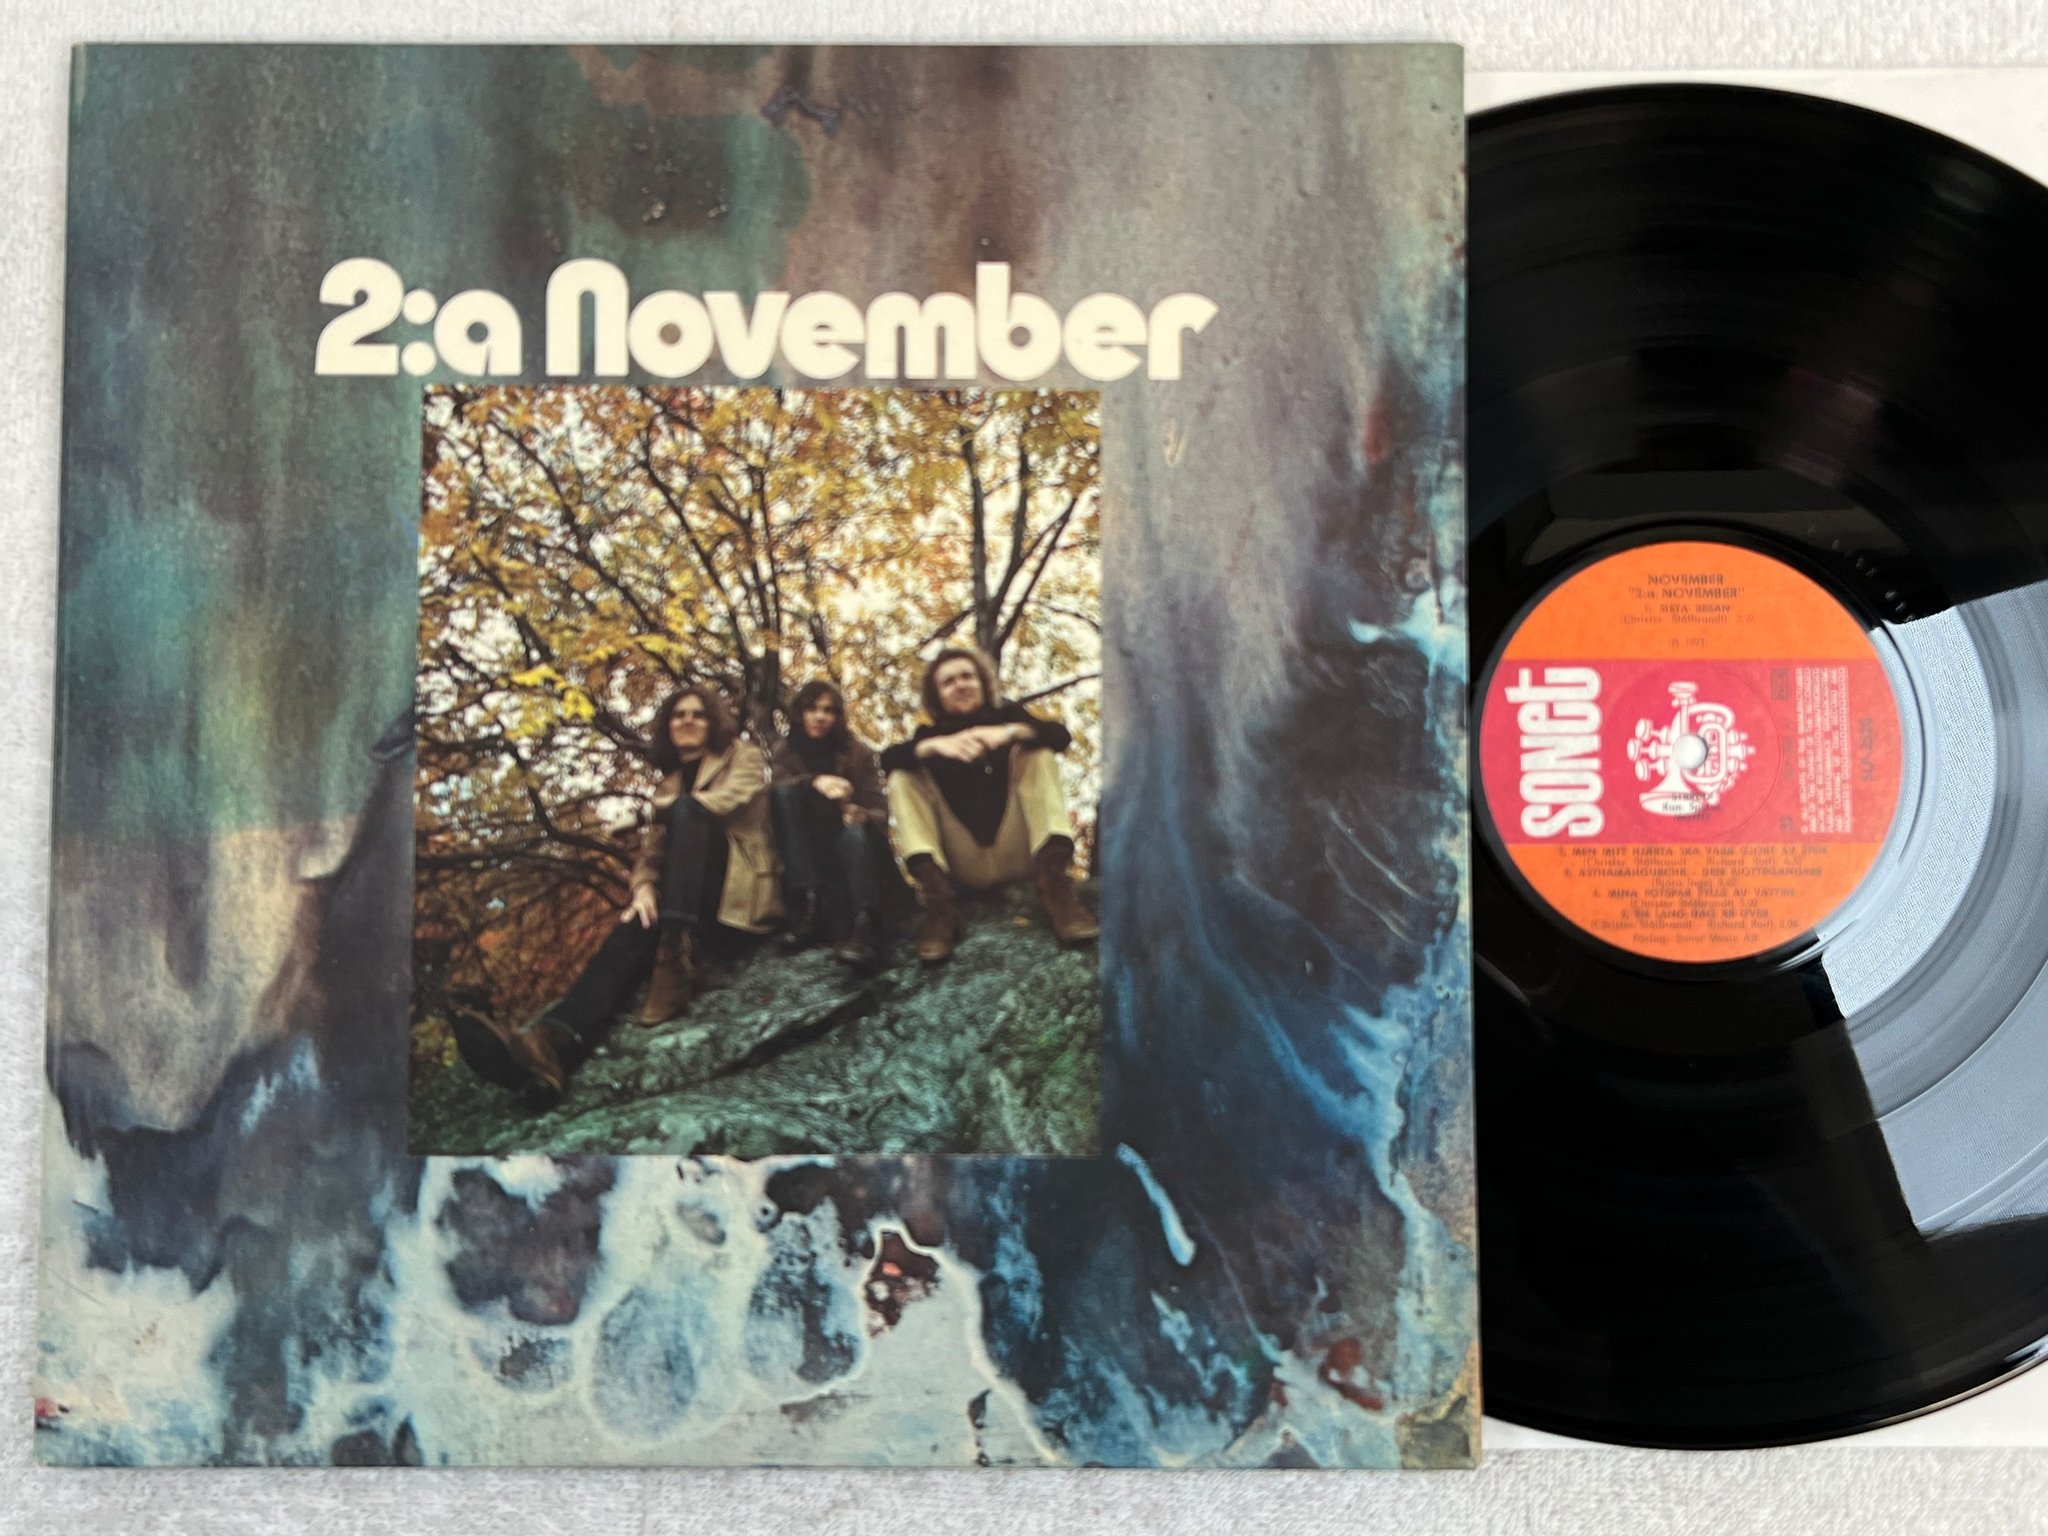 Omslagsbild för skivan NOVEMBER 2:a november LP -71 SONET SLP 2520 ** RARE **